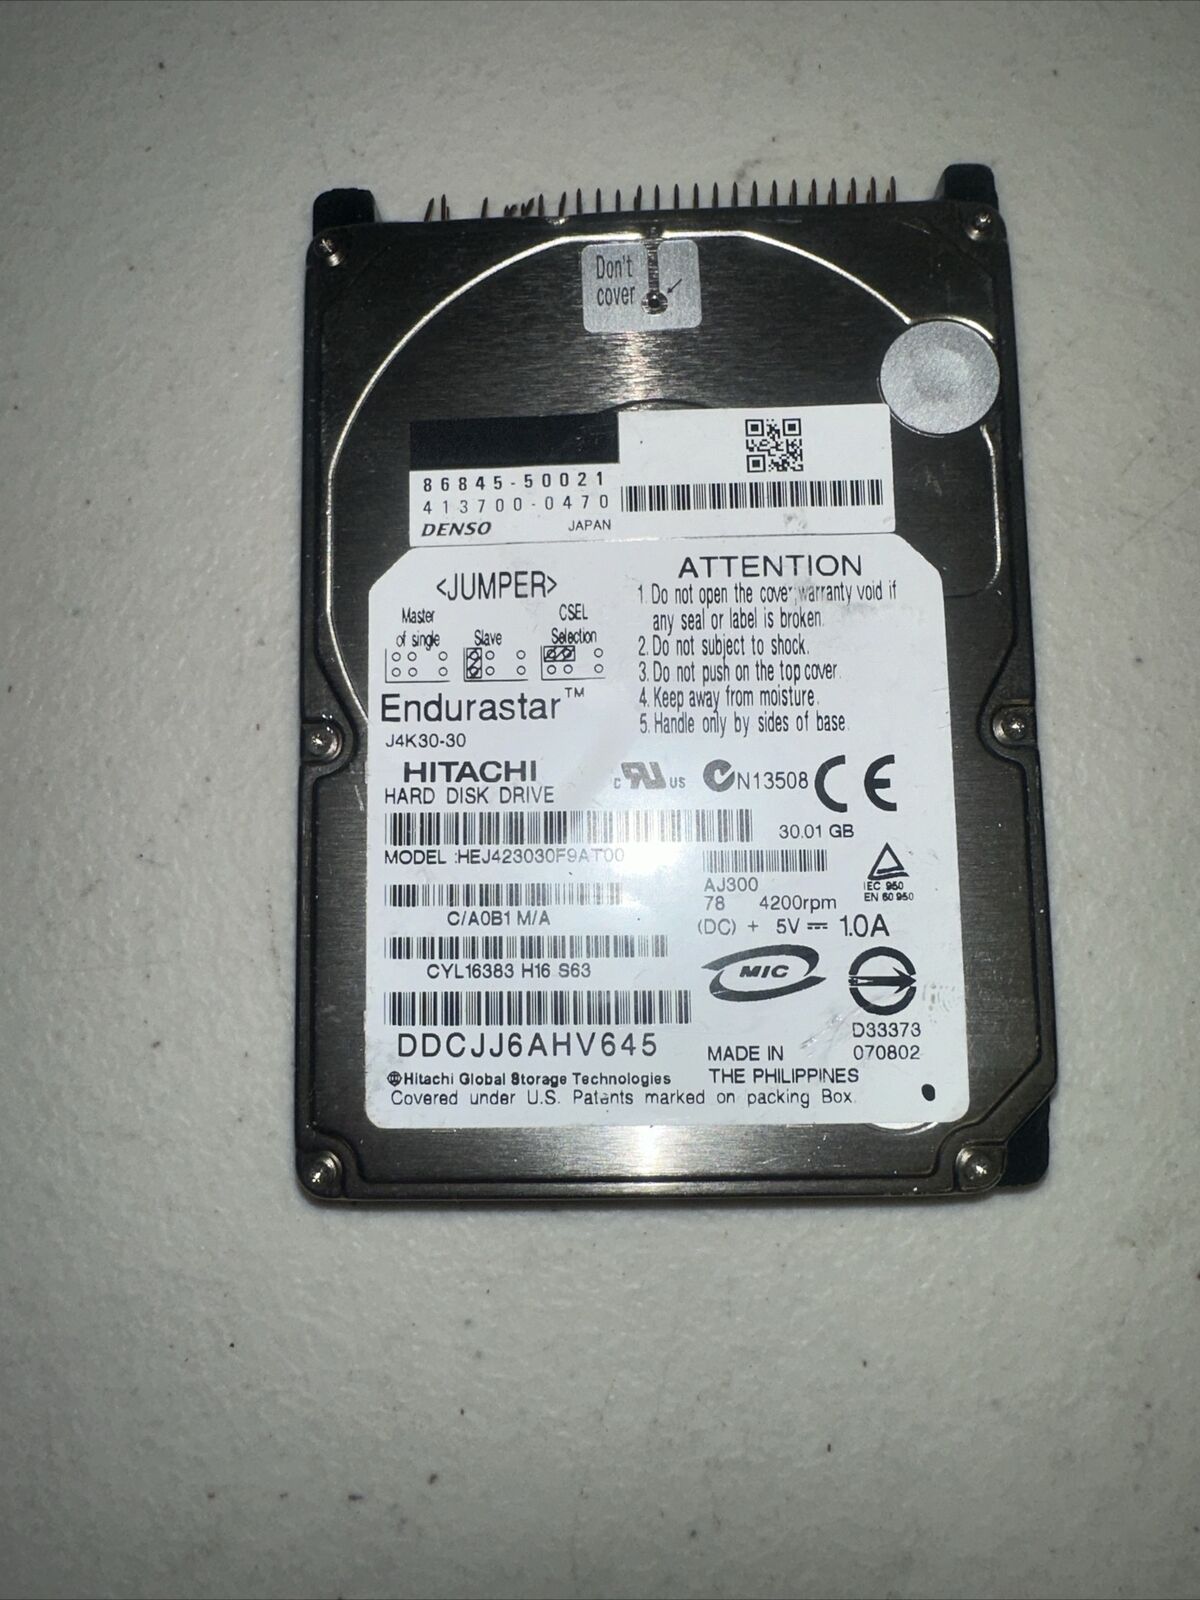 Hitachi HEJ423030F9AT00 30 GB Hard Disk, Endurastar J4K30-30